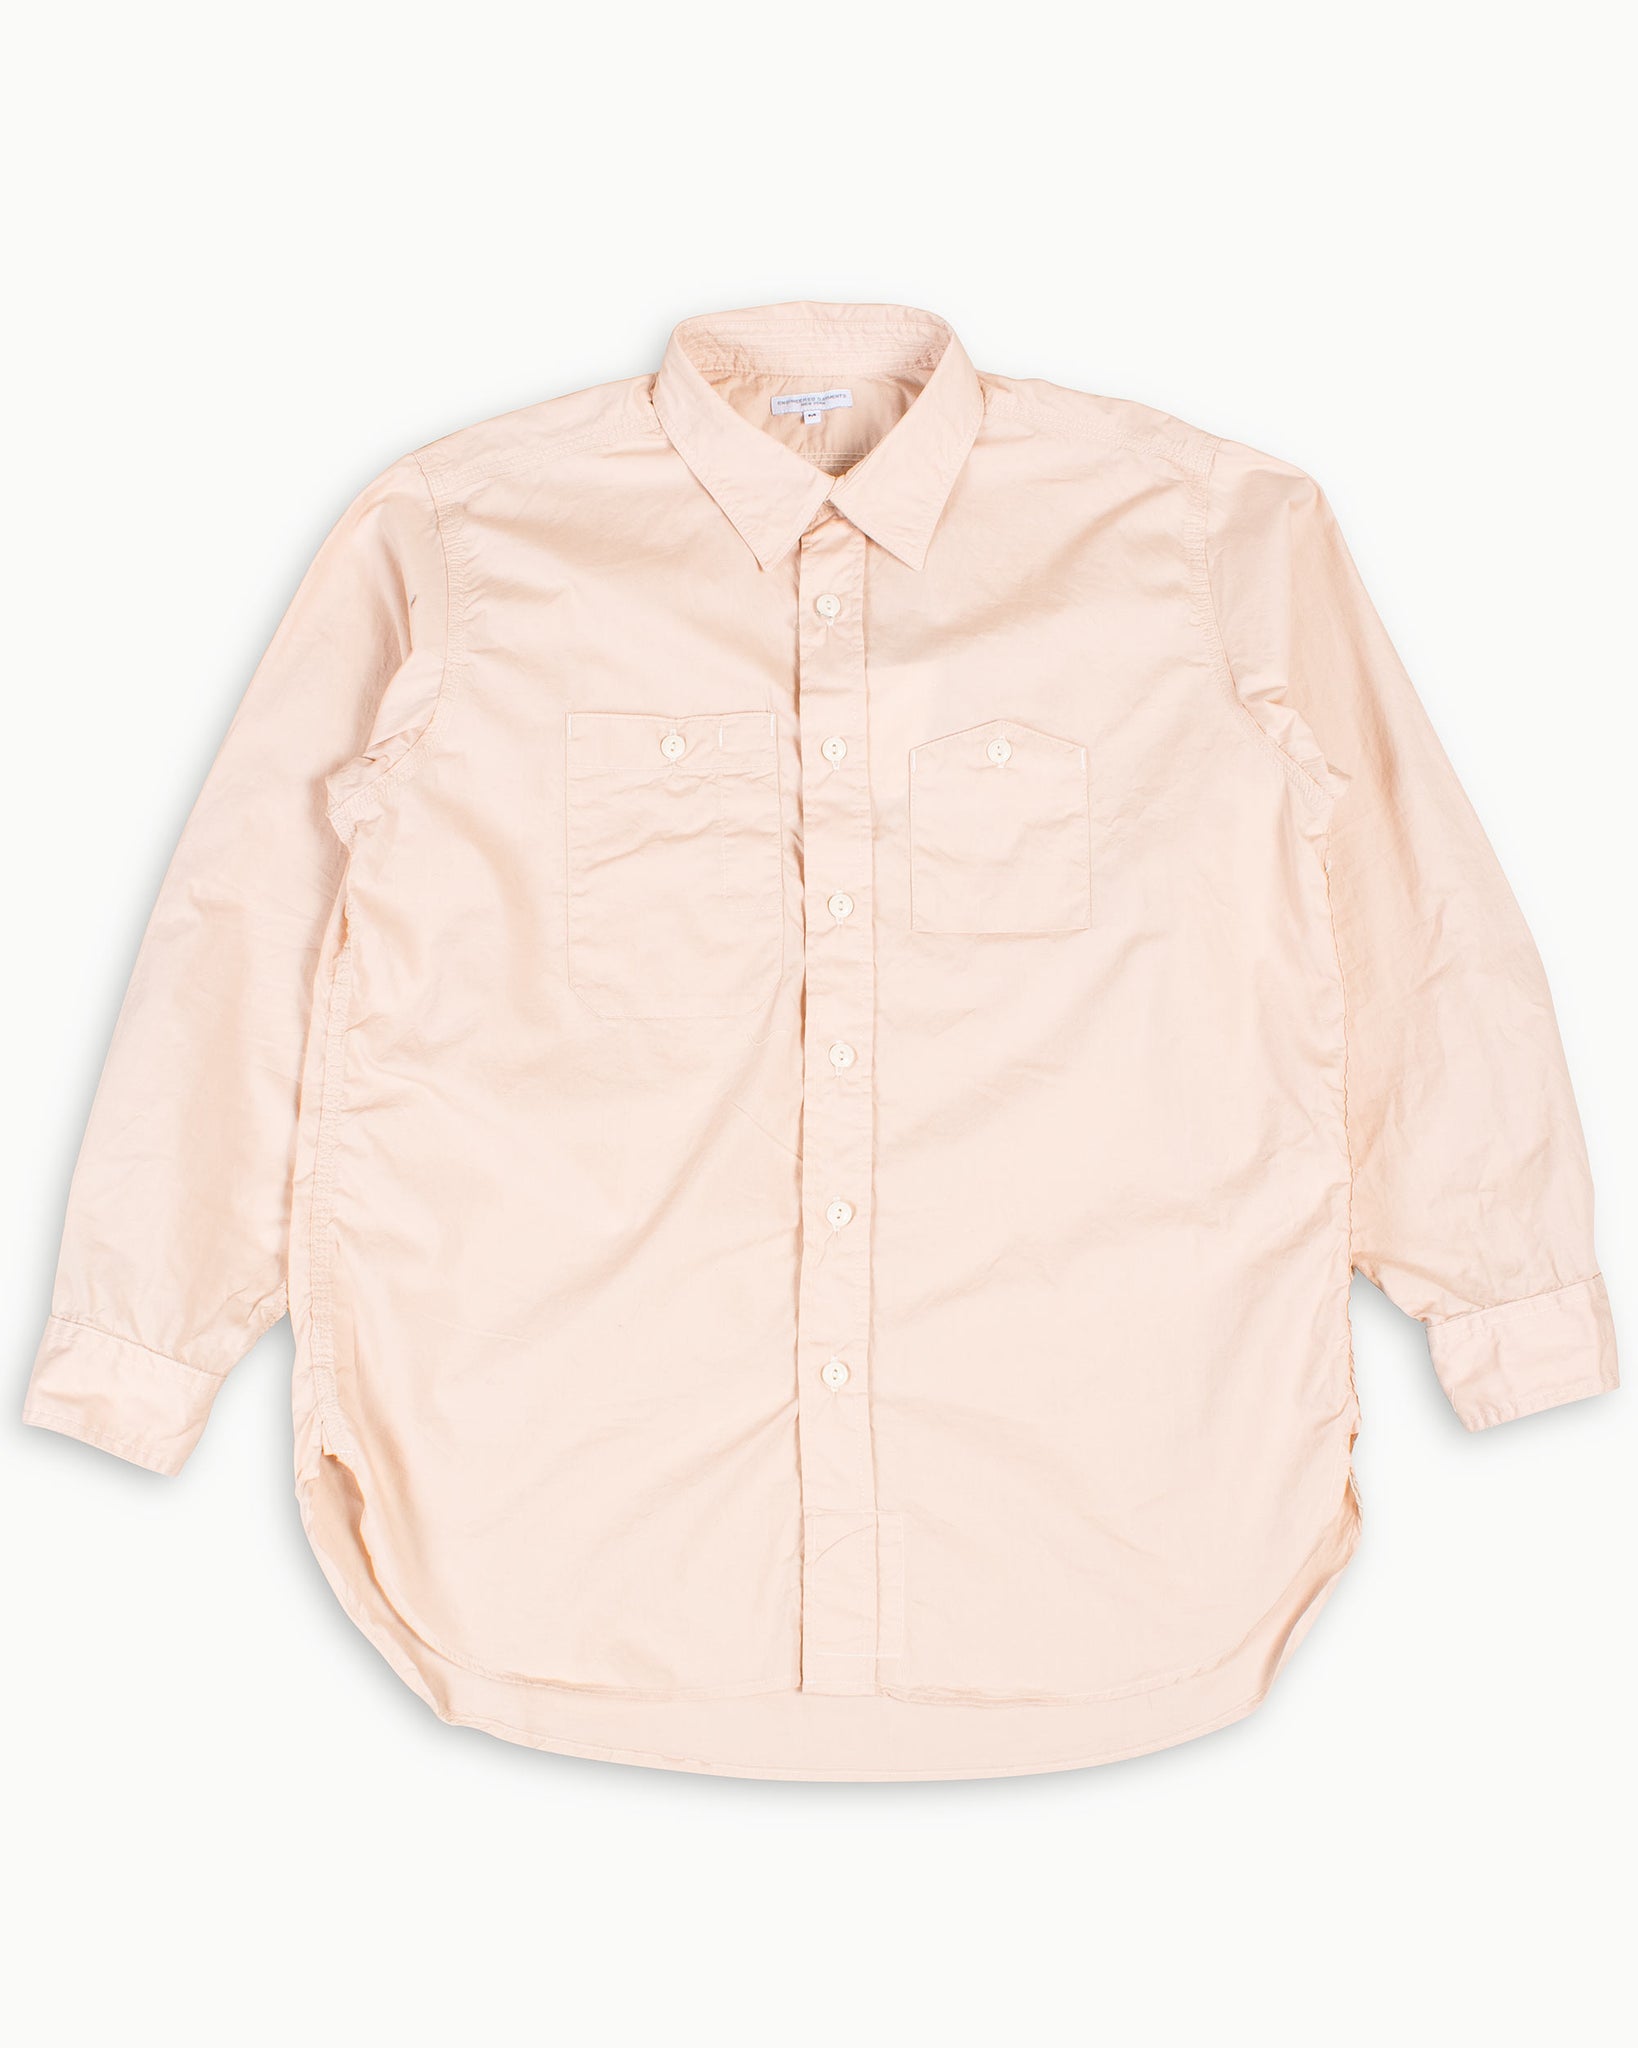 Engineered Garments Work Shirt Pink Superfine Poplin